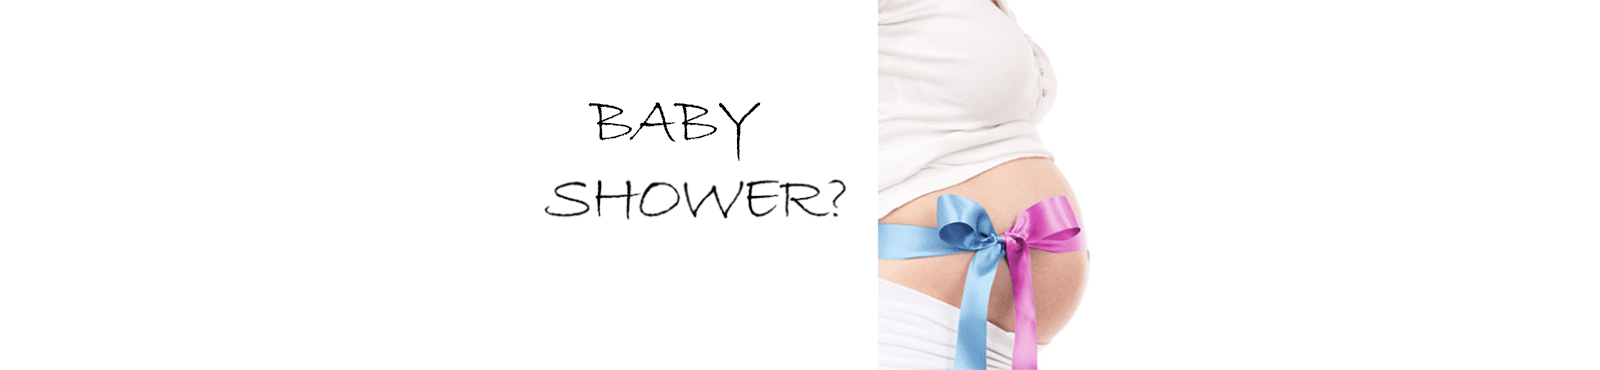 Babyshower - Hvad det? - 5 forslag til gaver (Dansk Design)